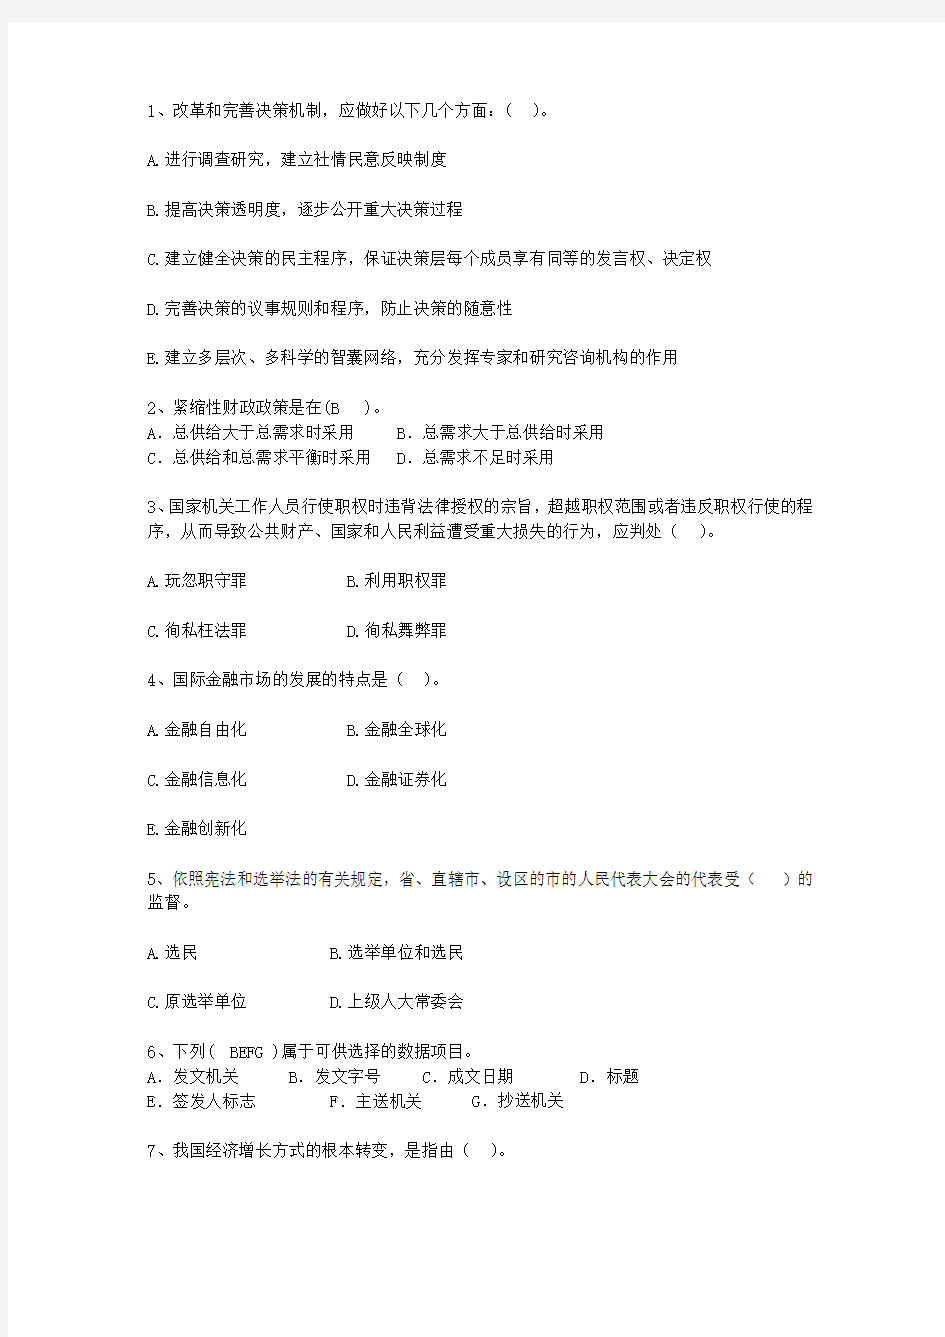 2011湖北省公选(公开选拔)领导干部考试答题技巧